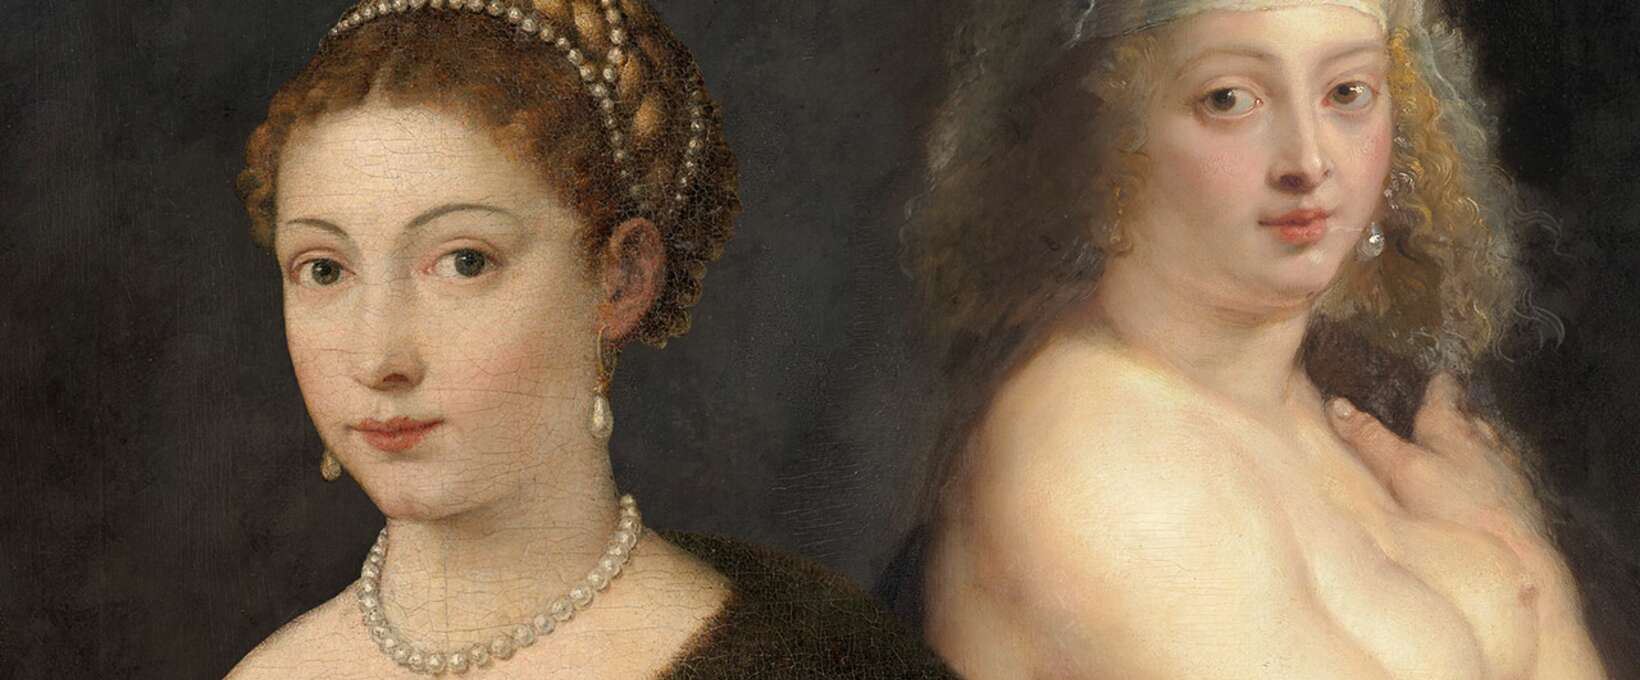 Gegenüberstellung zweier Gemälde von Peter Paul Rubens und Tiziano Vecellio | © © KHM-Museumsverband